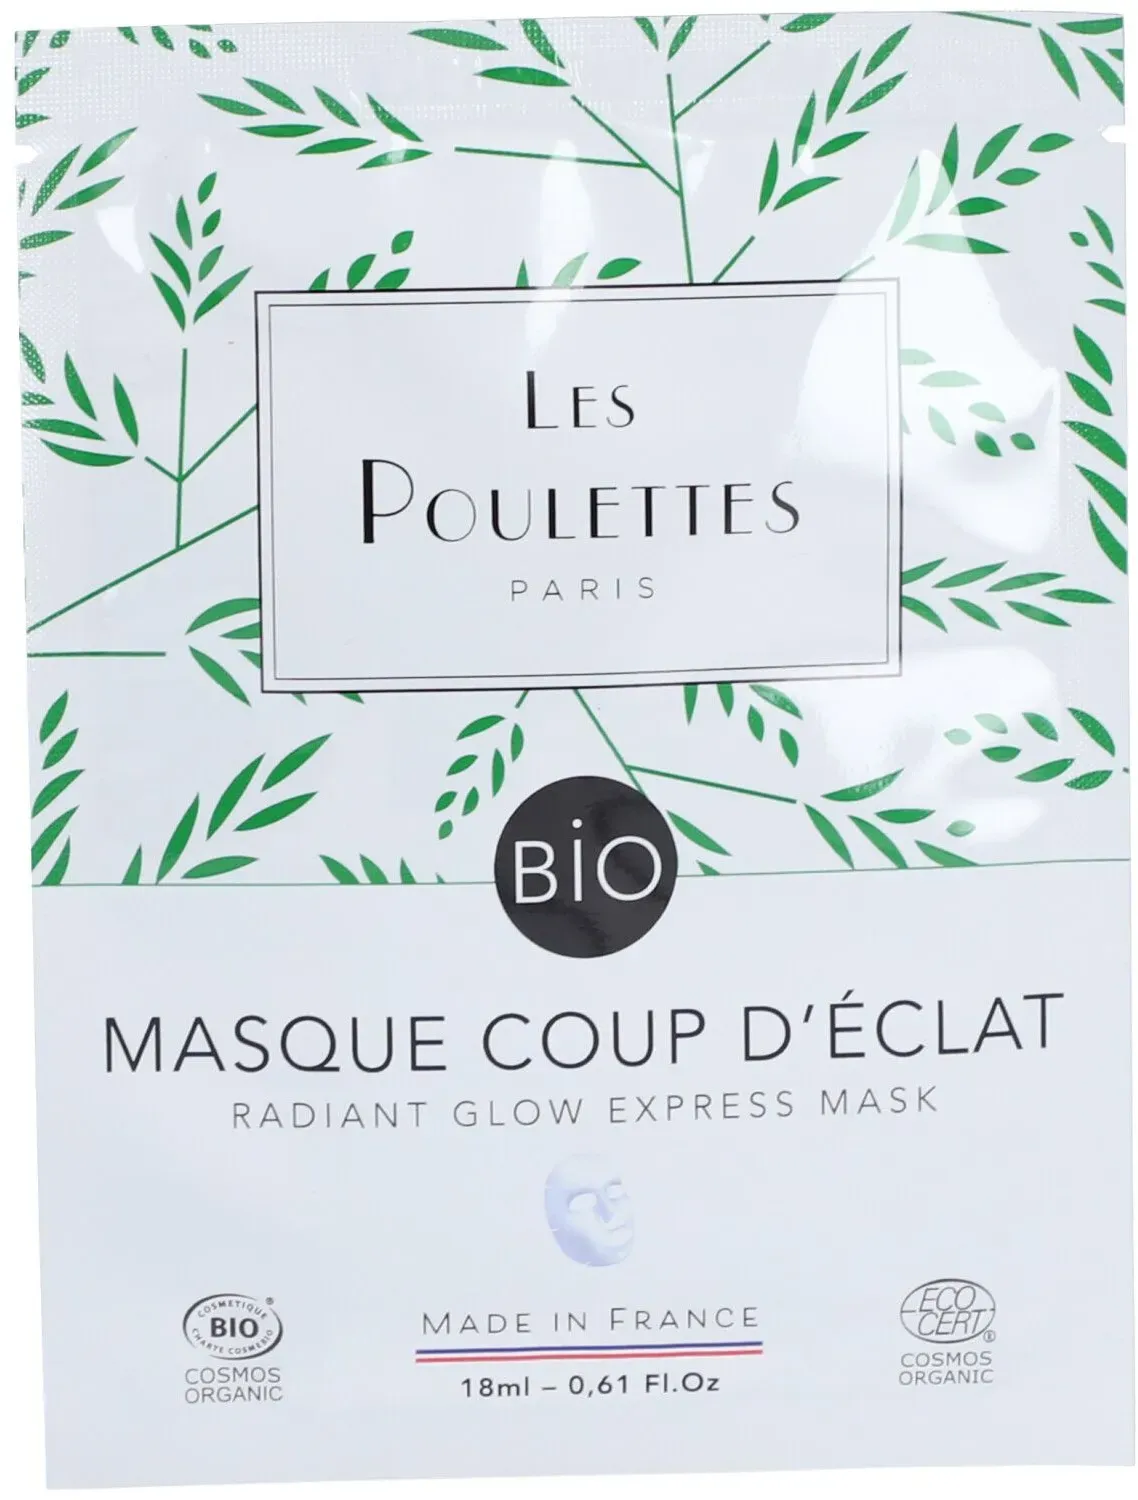 Les Poulettes Paris Masque Coup d'Éclat Bio 18 ml masque(s) pour le visage